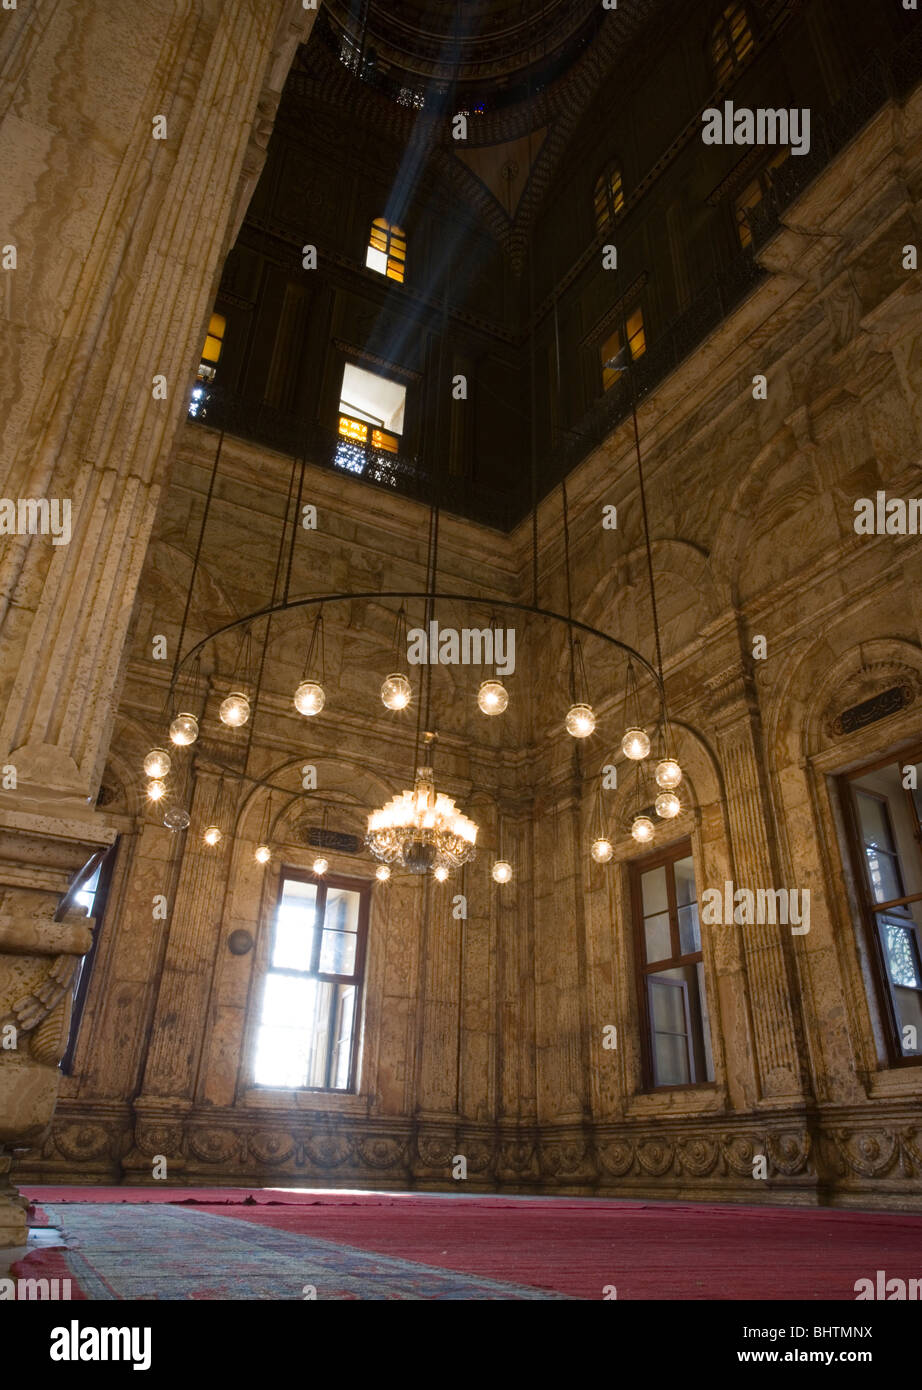 Les faisceaux lumineux à l'intérieur de la mosquée de Mohamed Ali dans la Citadelle de Saladin au Caire, Égypte. Banque D'Images